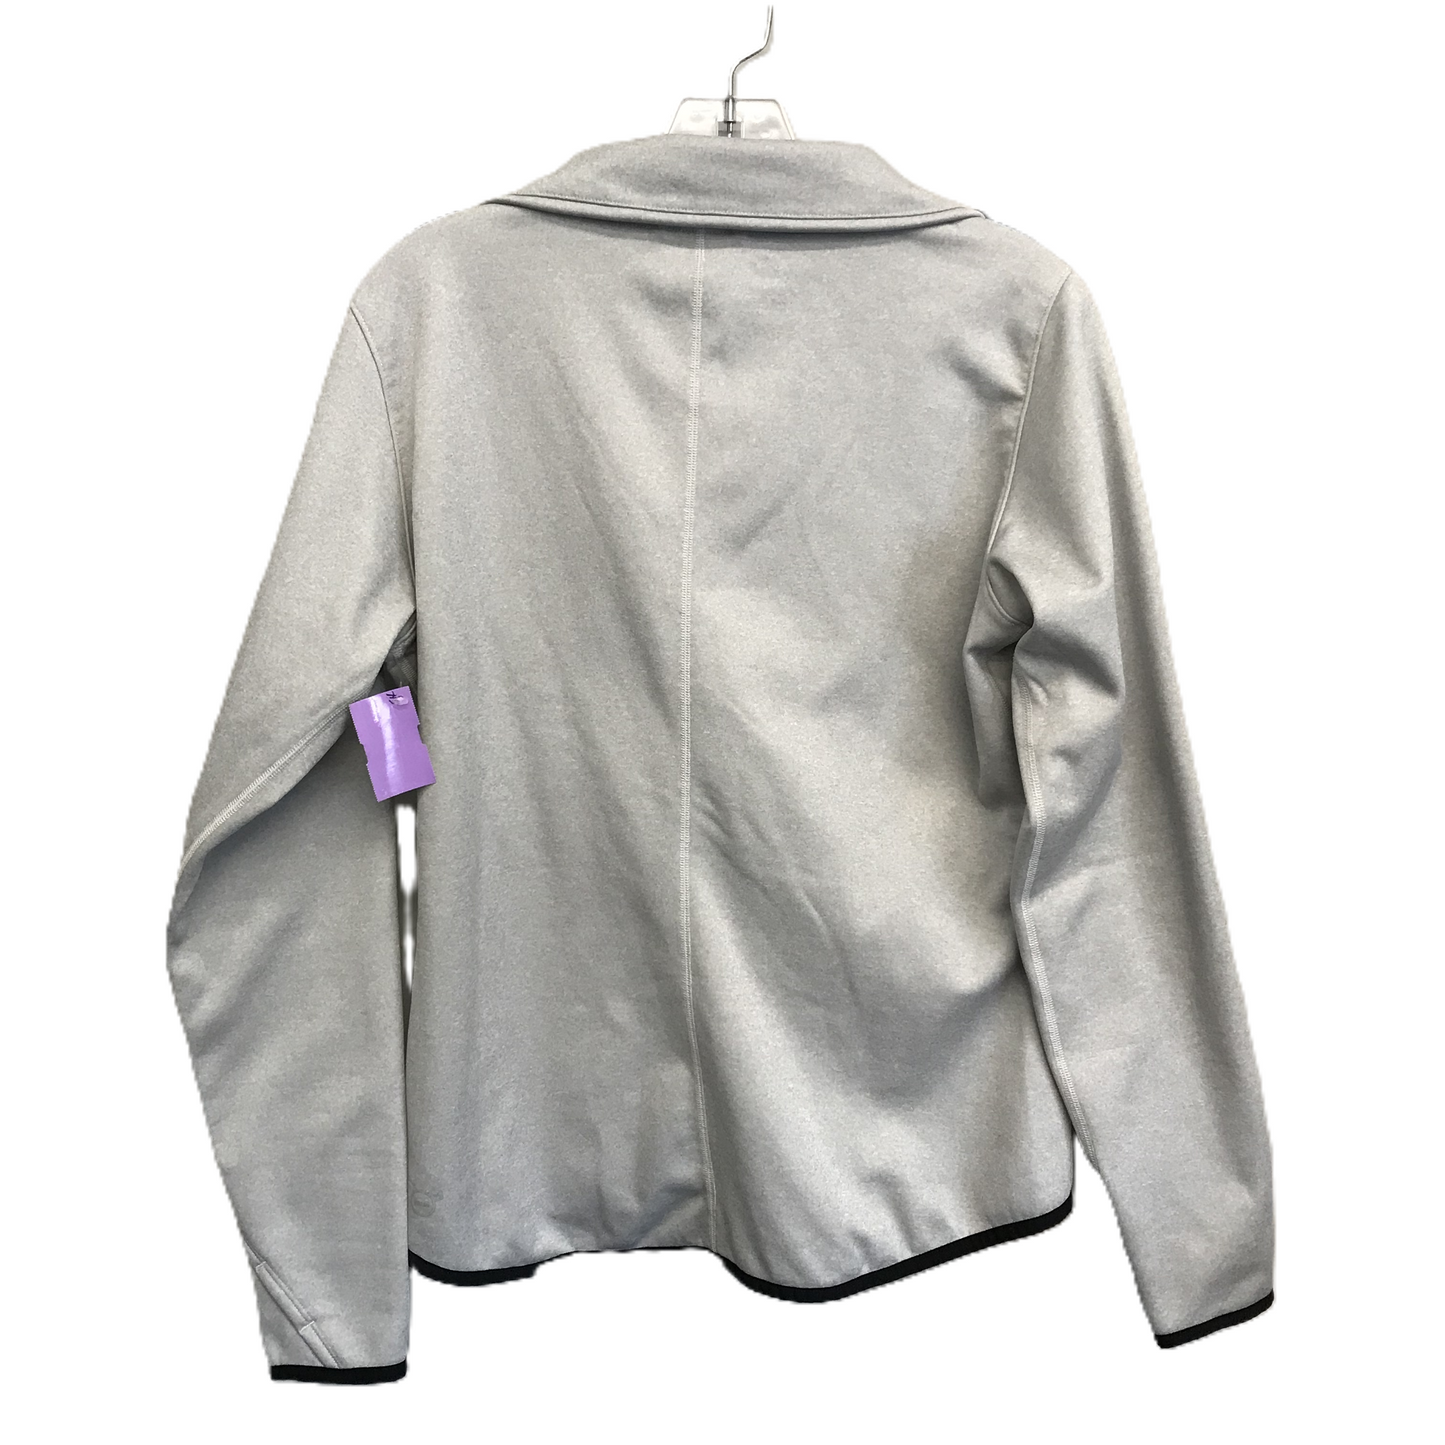 Grey Athletic Jacket By Puma, Size: M